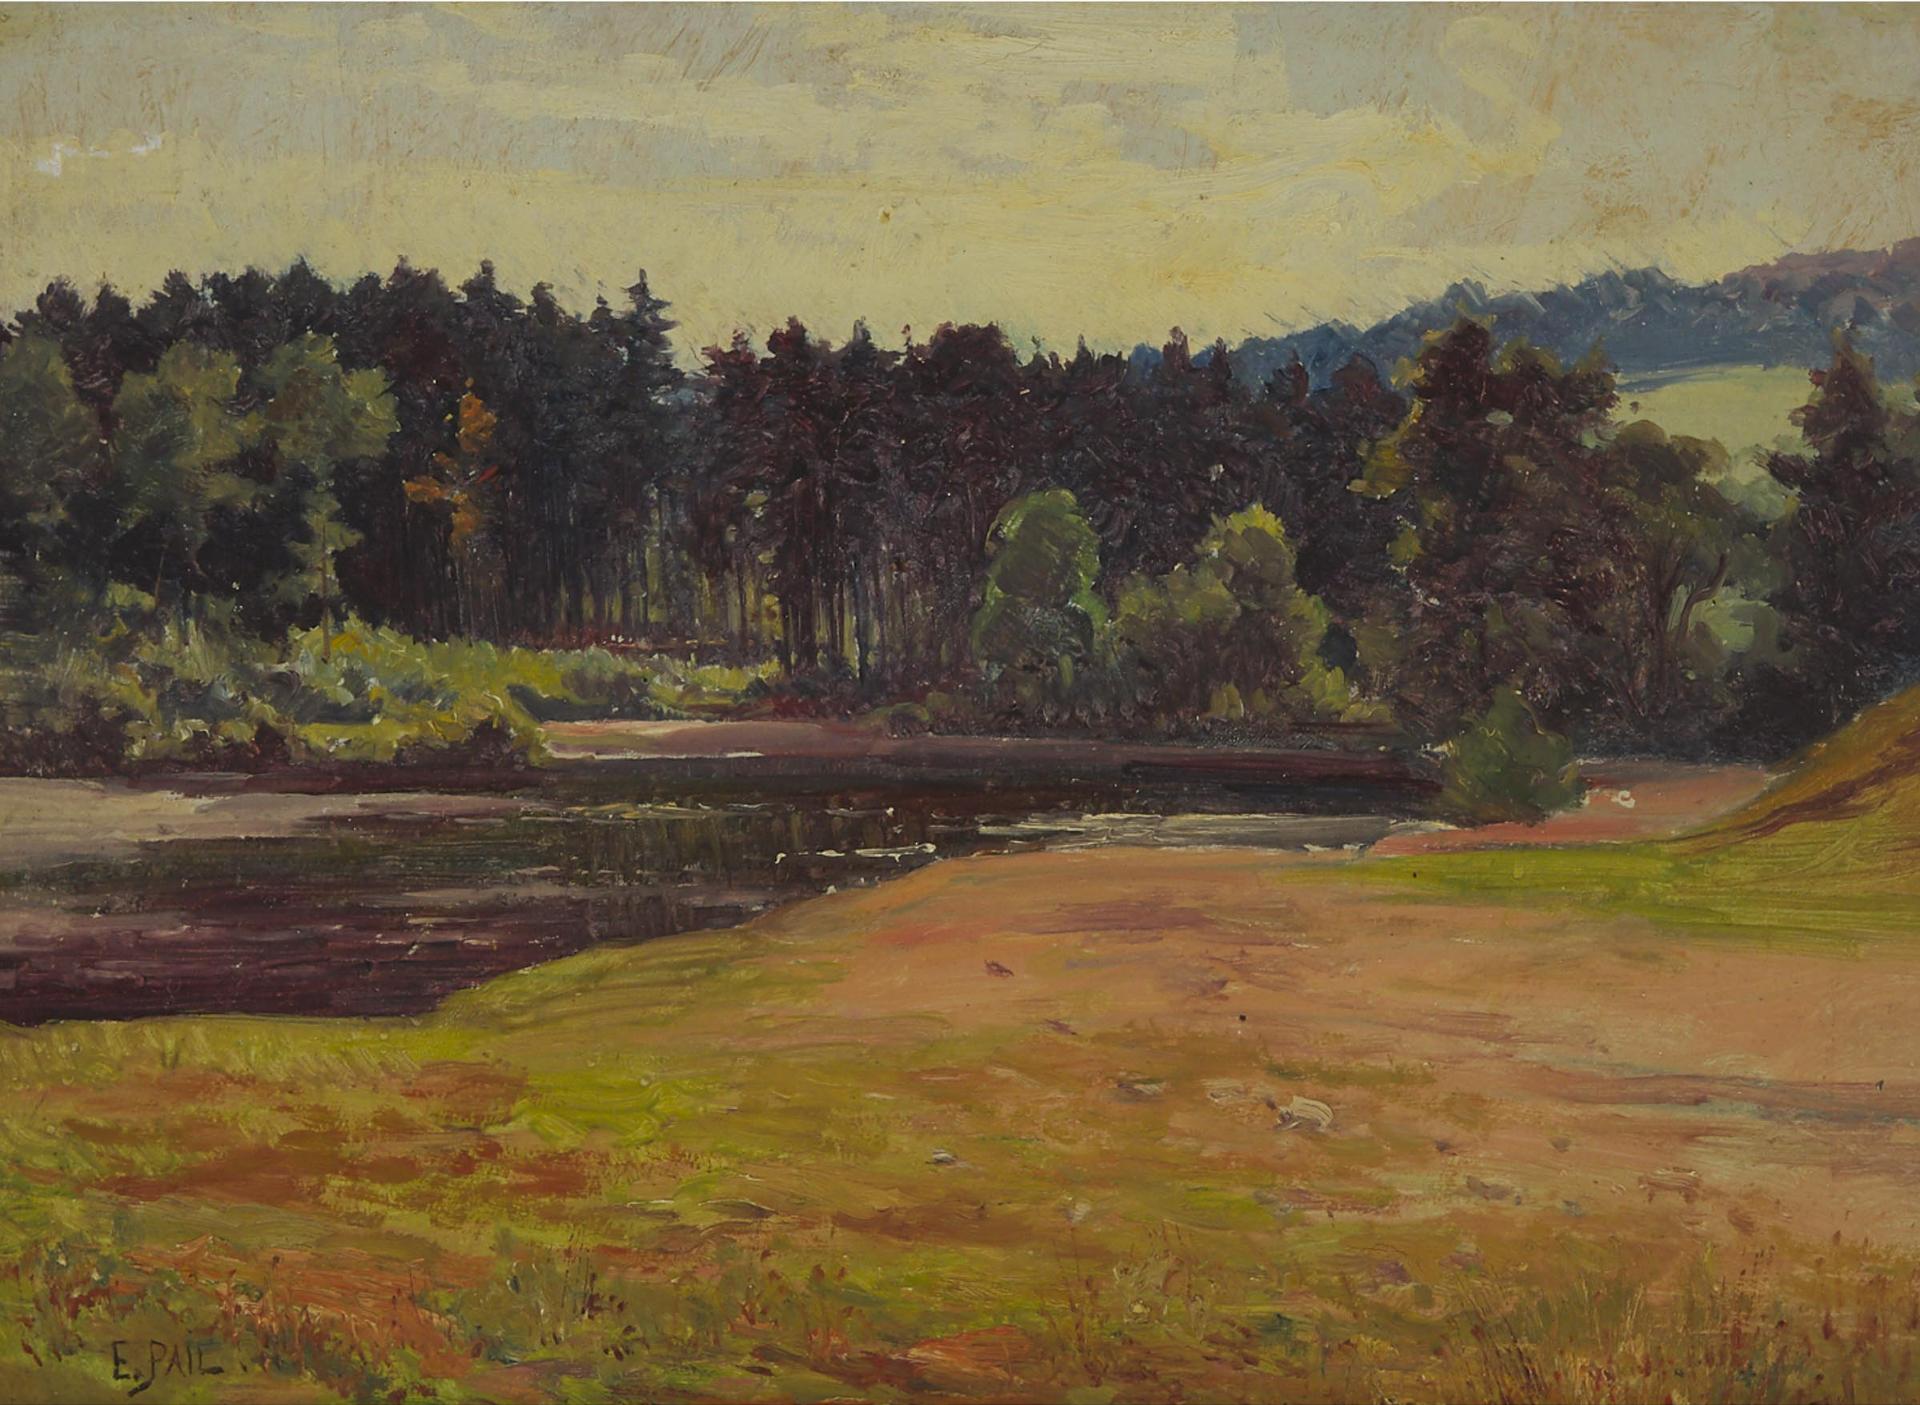 Edouard Pail (1851-1916) - Placid River